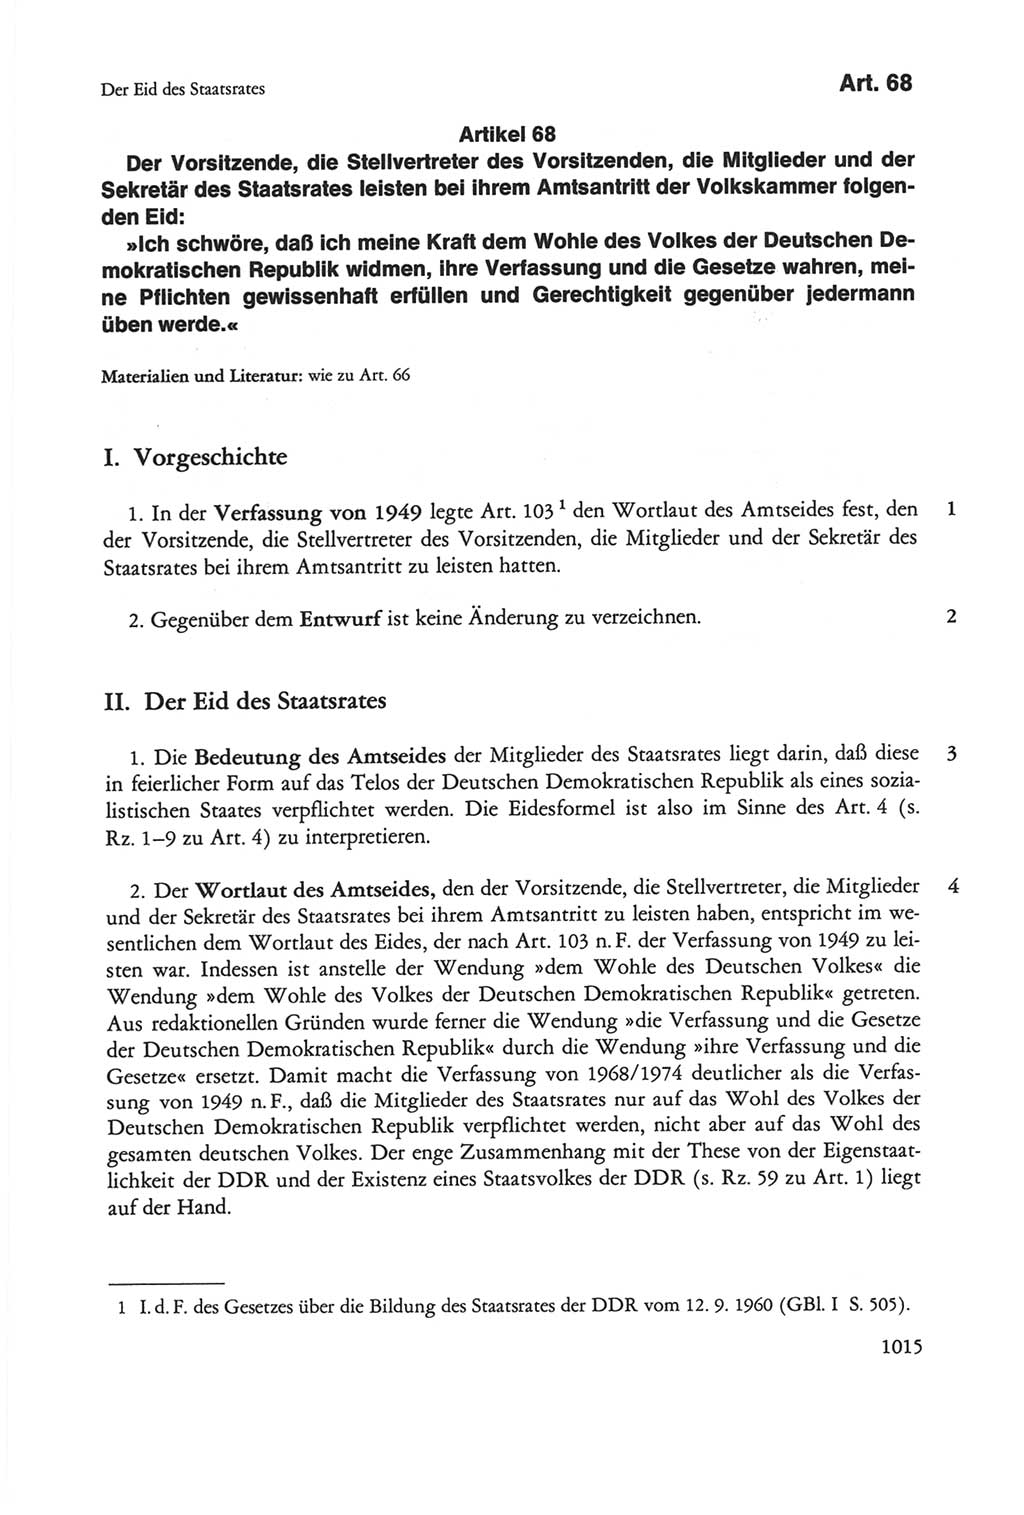 Die sozialistische Verfassung der Deutschen Demokratischen Republik (DDR), Kommentar 1982, Seite 1015 (Soz. Verf. DDR Komm. 1982, S. 1015)